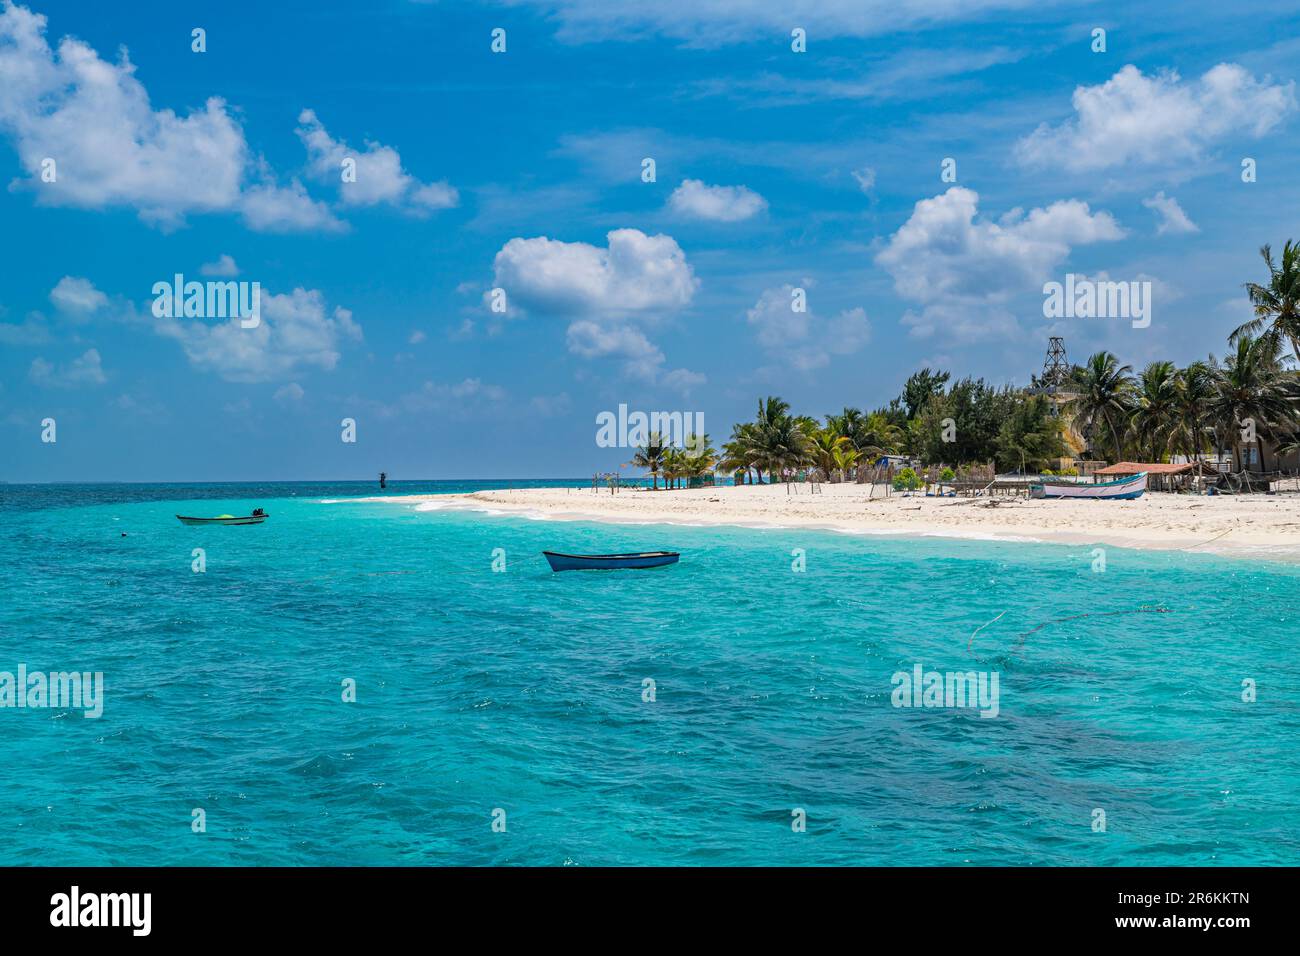 Plage de sable blanc bordée de palmiers, île d'Agatti, archipel de Lakshadweep, territoire de l'Union de l'Inde, océan Indien, Asie Banque D'Images